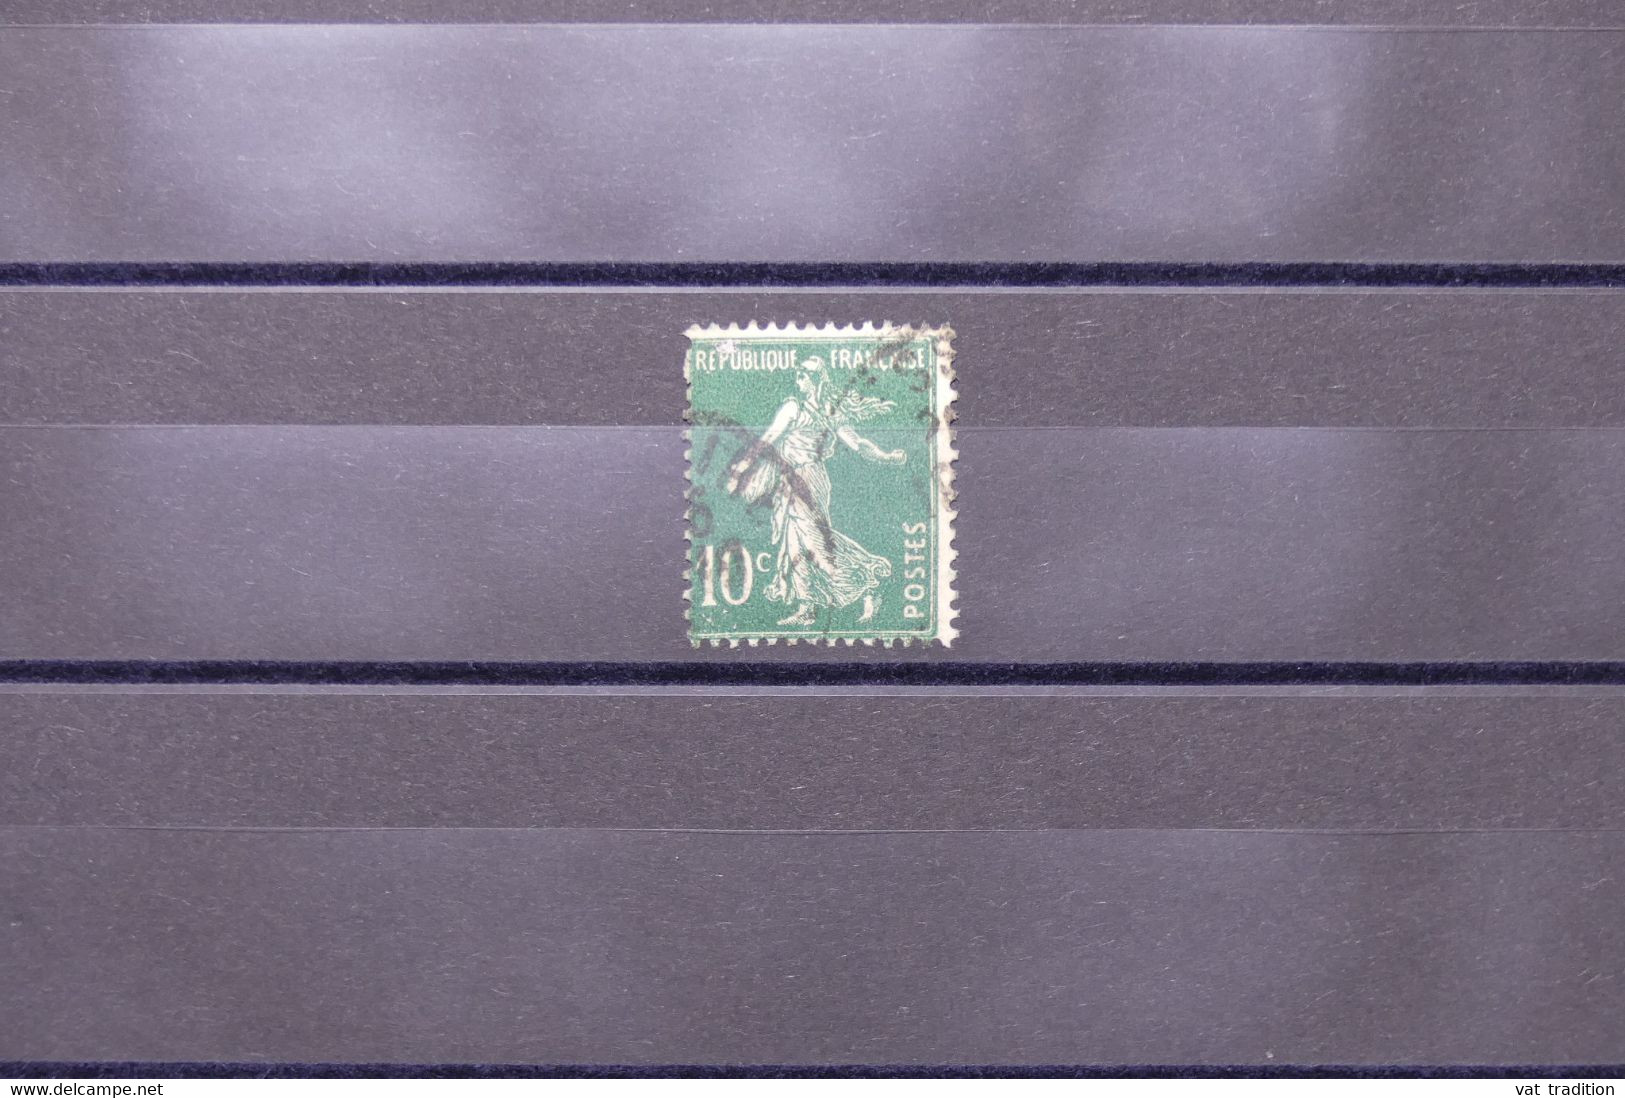 FRANCE - Variété - N°Yvert 159 - Semeuse - Lettre E De Postes En Trident - Oblitéré  - L 73977 - Gebraucht